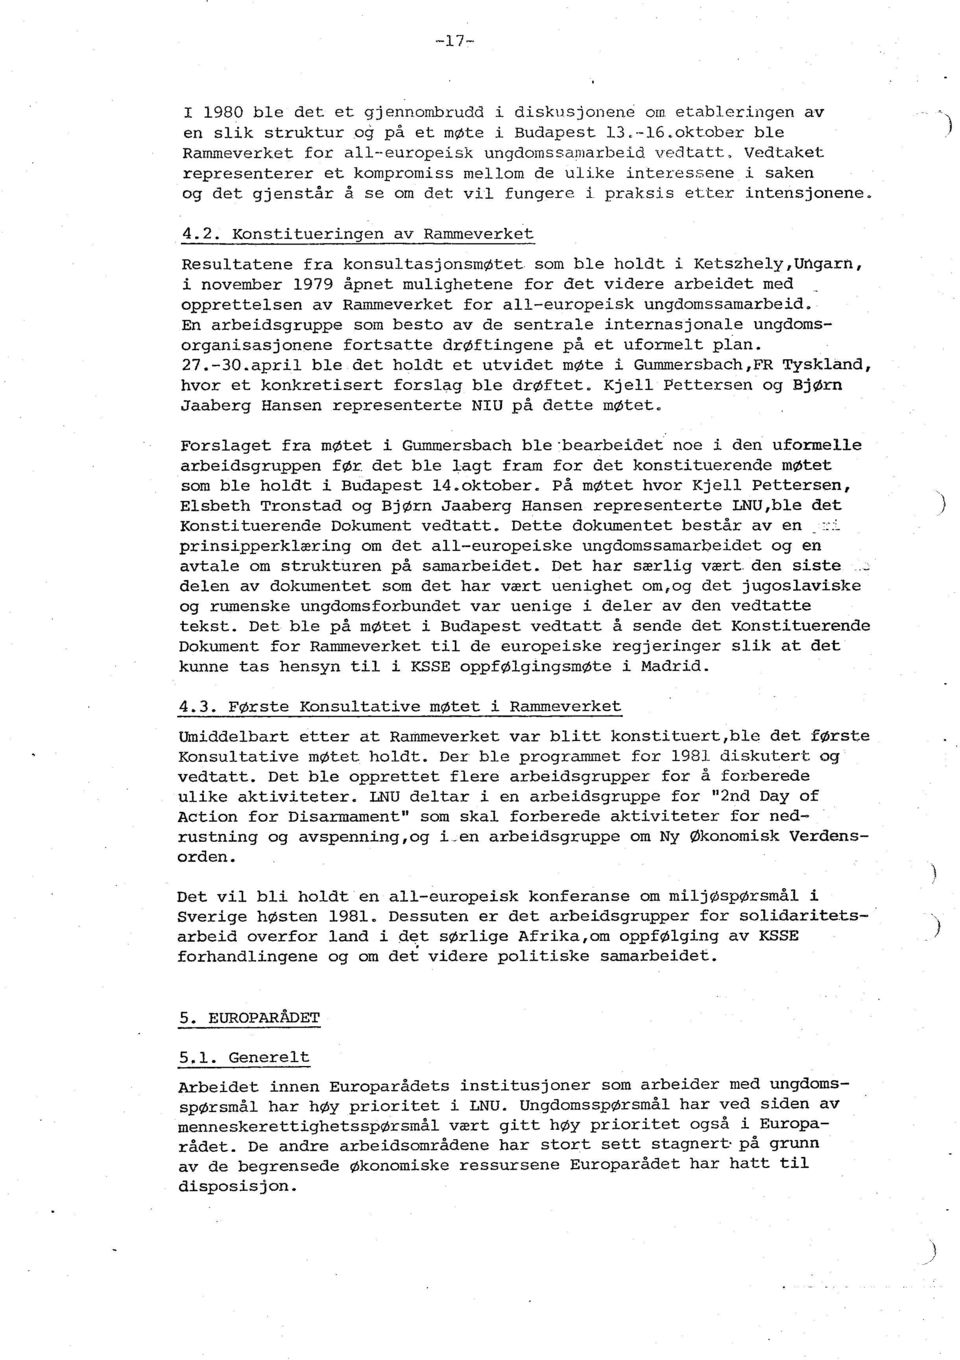 Konstitueringen av Rammeverket Resultatene fra konsultasjonsmøtet som ble holdt i Ketszhely,Urigarn, i november 1979 åpnet mulighetene for det videre arbeidet med opprettelsen av Rammeverket for all